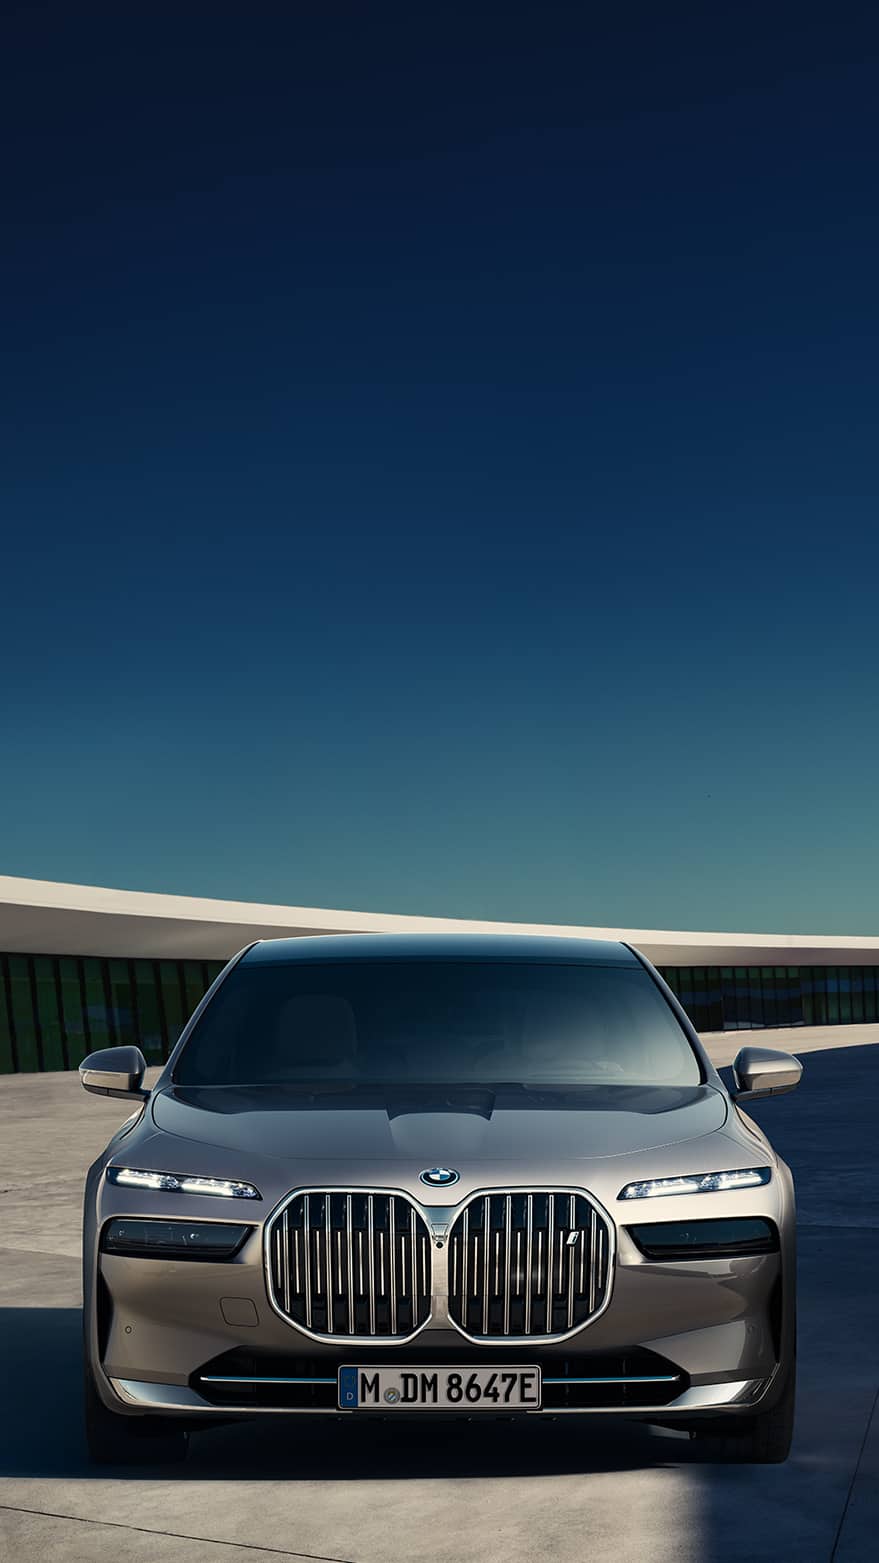  BMW Hintergrundbild 879x1563. Exklusiv: BMW wallpaper